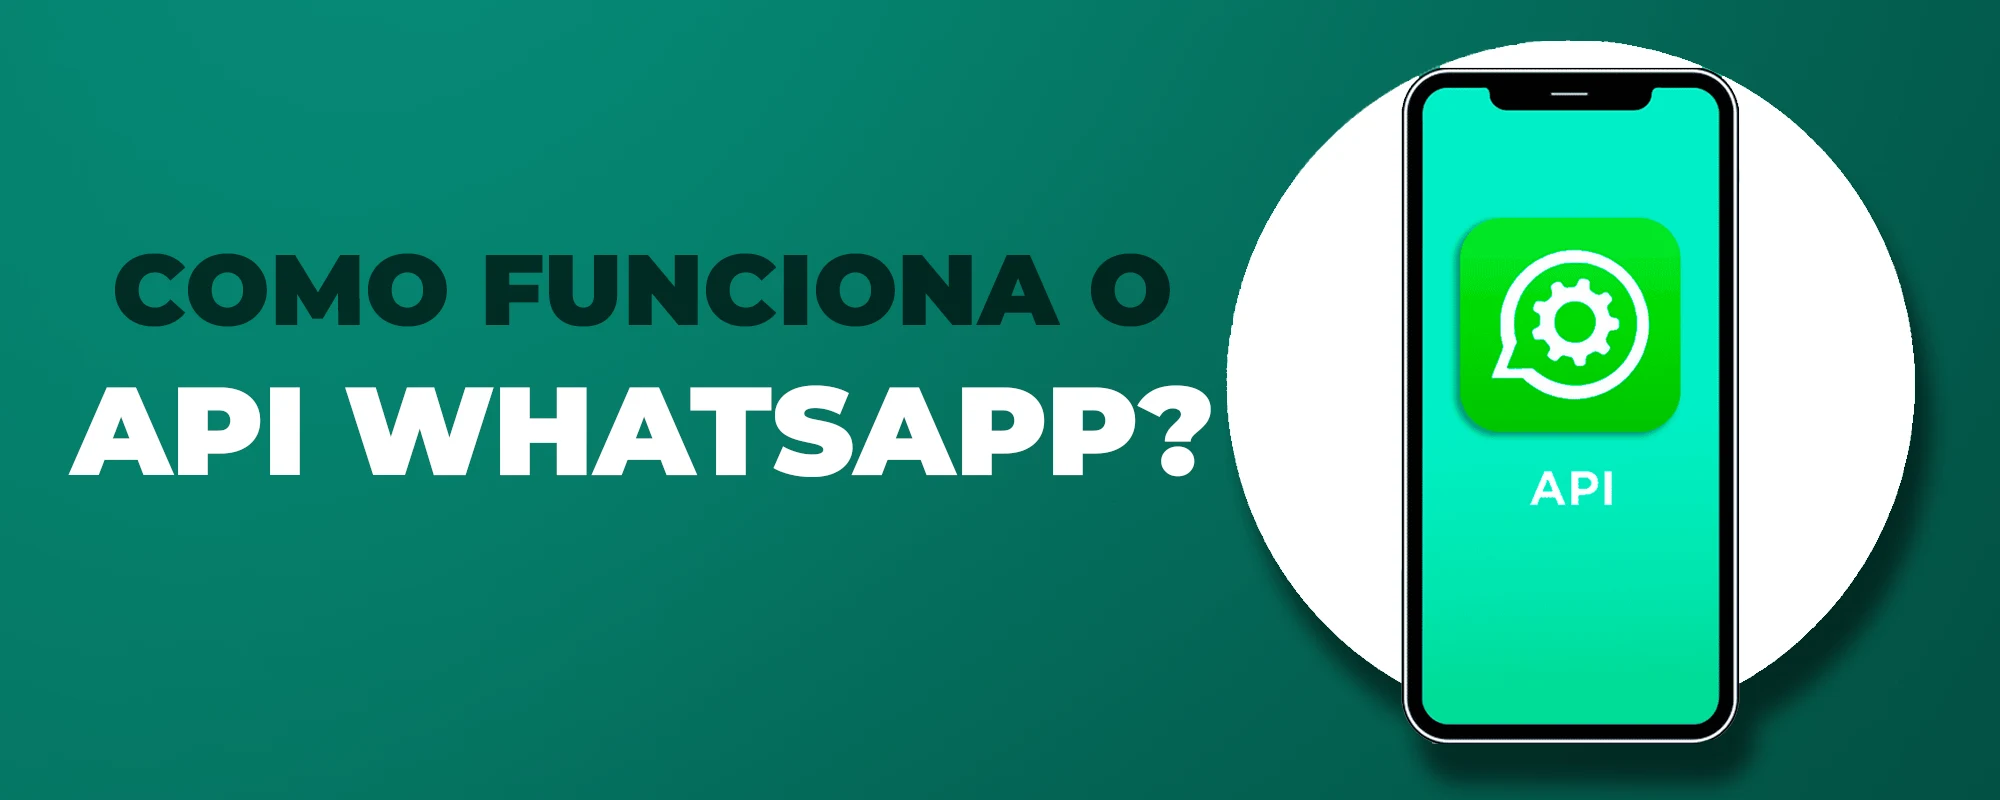 Imagem com fundo verde com a escrita "como funciona o API Whatsapp?"